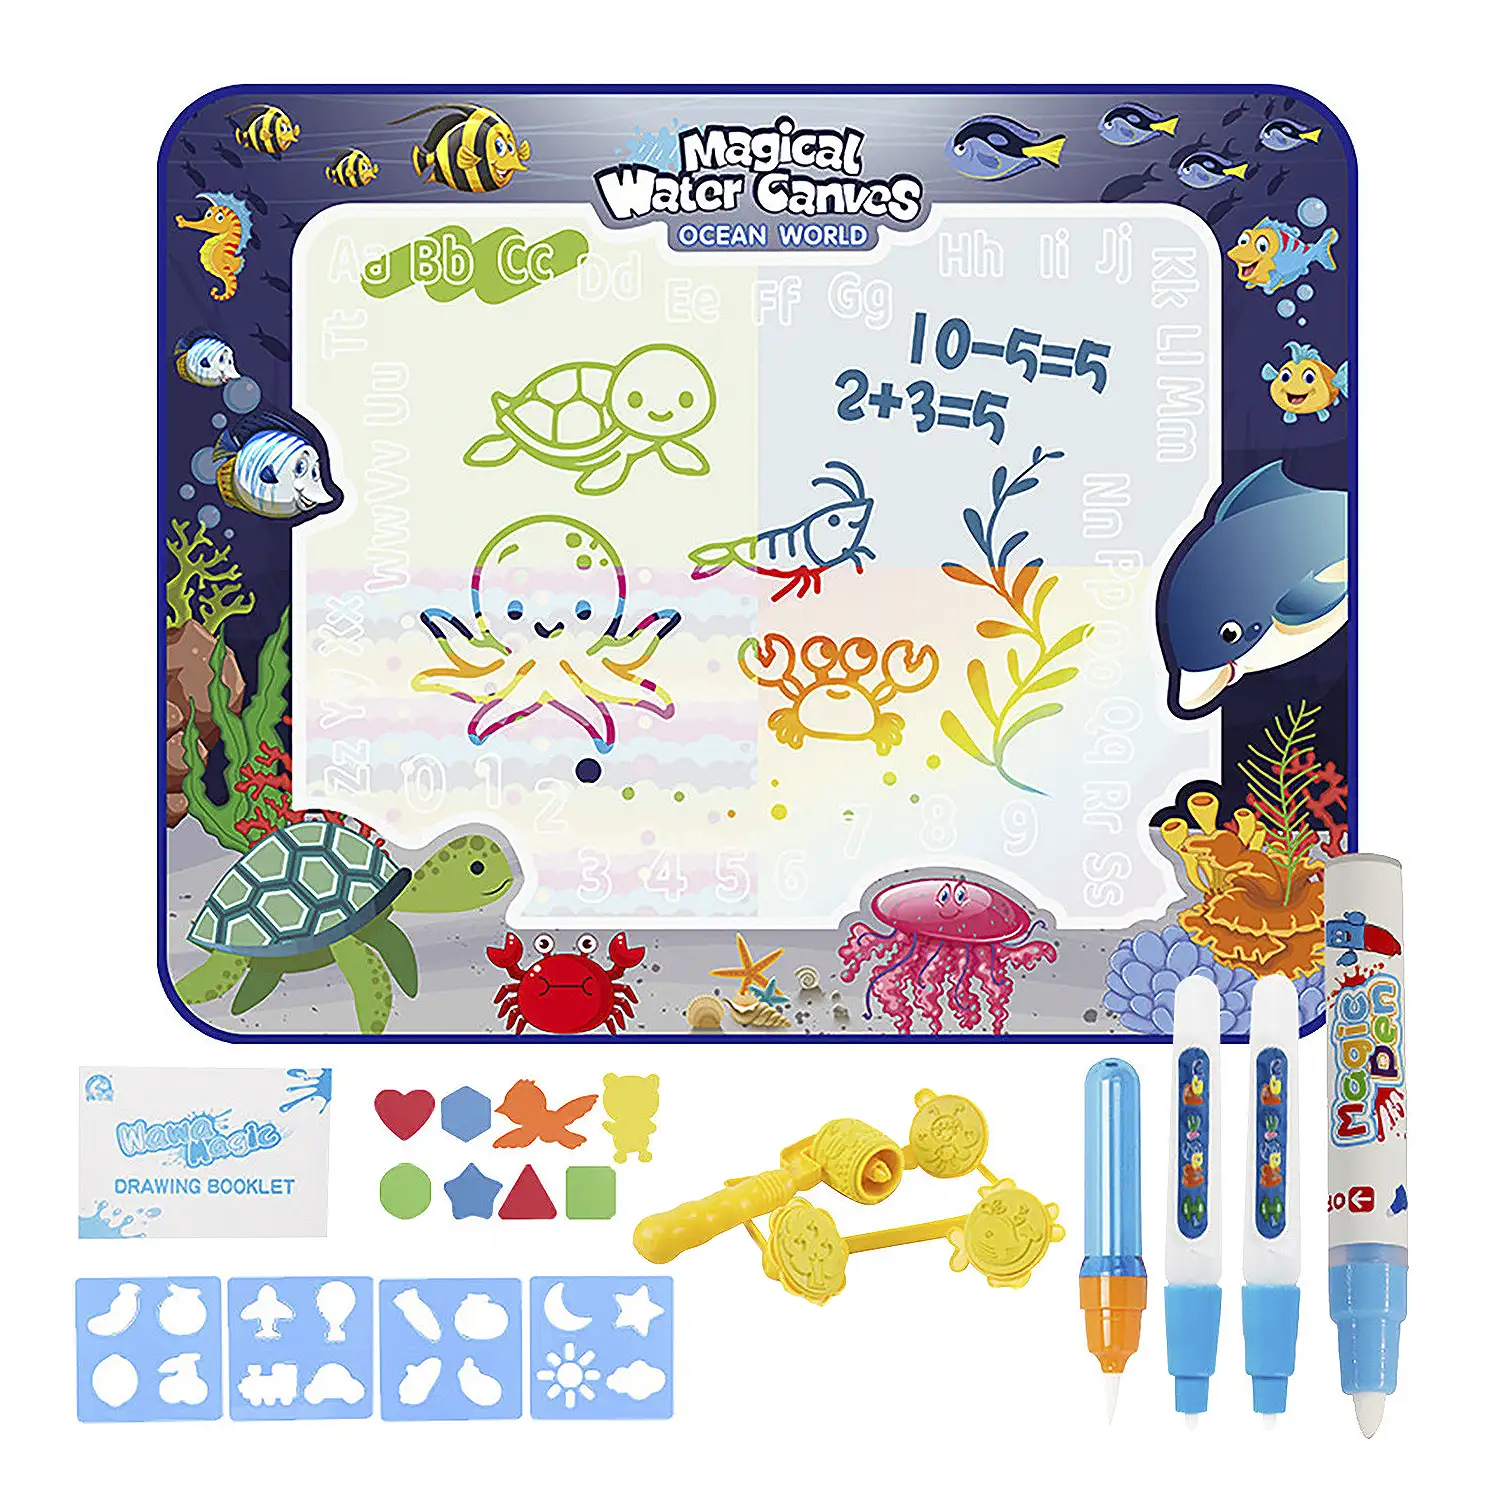 Pizarra infantil para dibujar con agua de 100x80cm. Diseño peces. Incluye 3 rotuladores de agua, 4 plantillas de dibujo, 4 tampones con formas y 8 figuras de EVA.